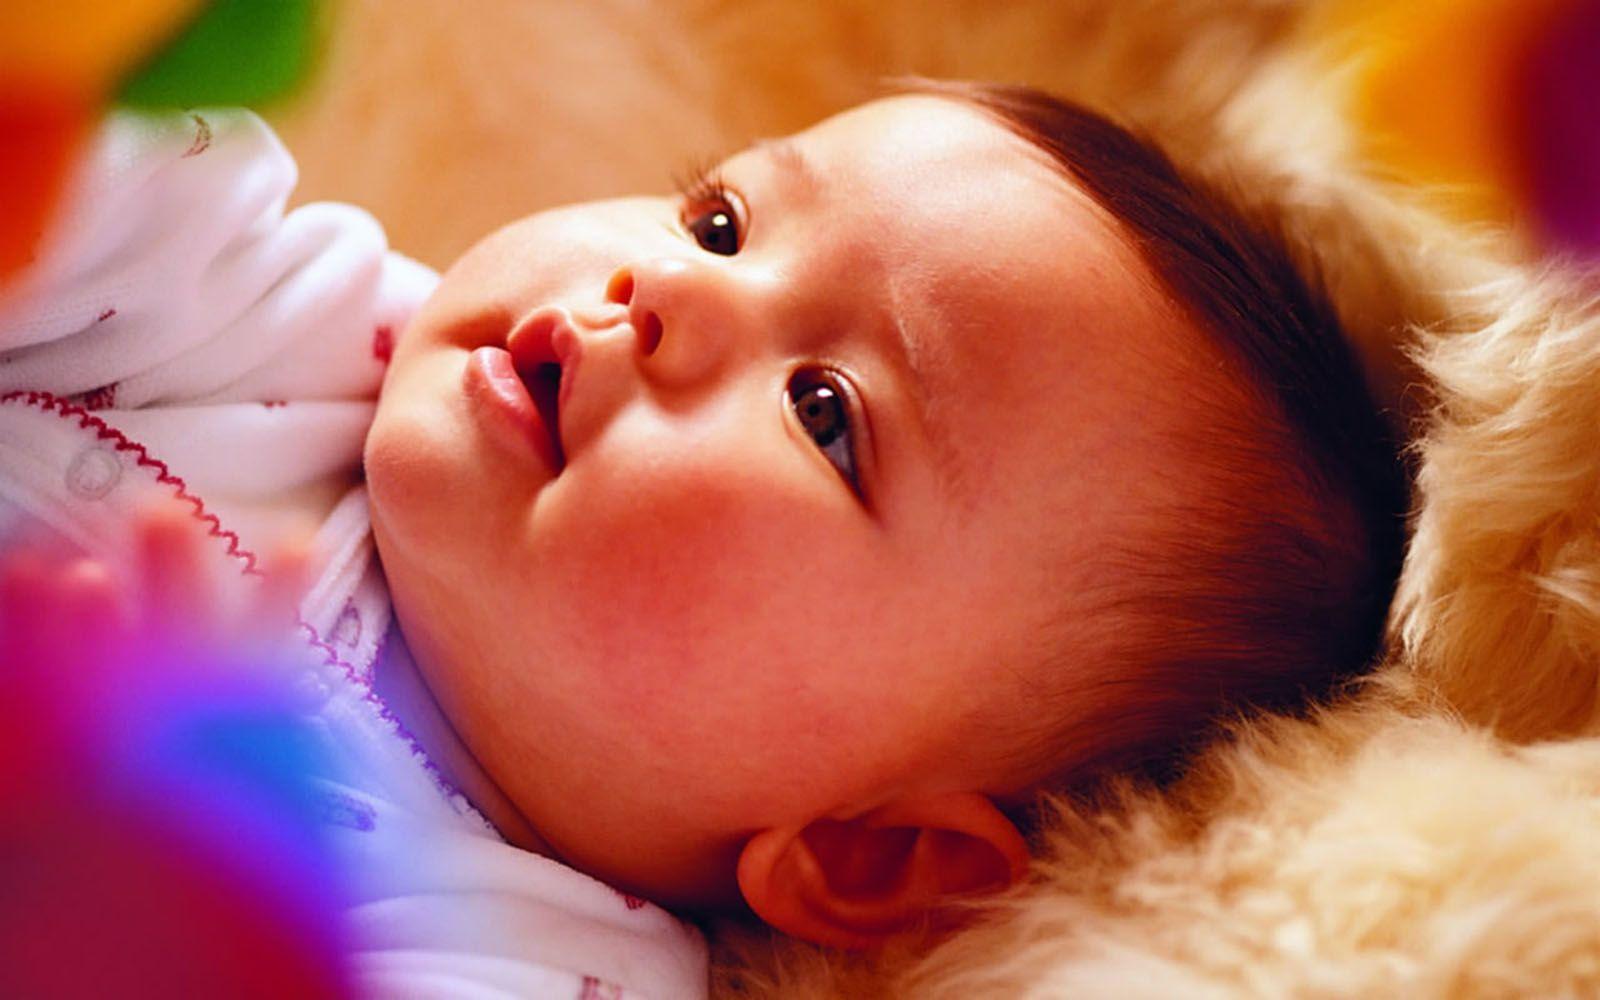 Baby Cute HD Wallpaper For Laptop Full Pics Mobile Phones